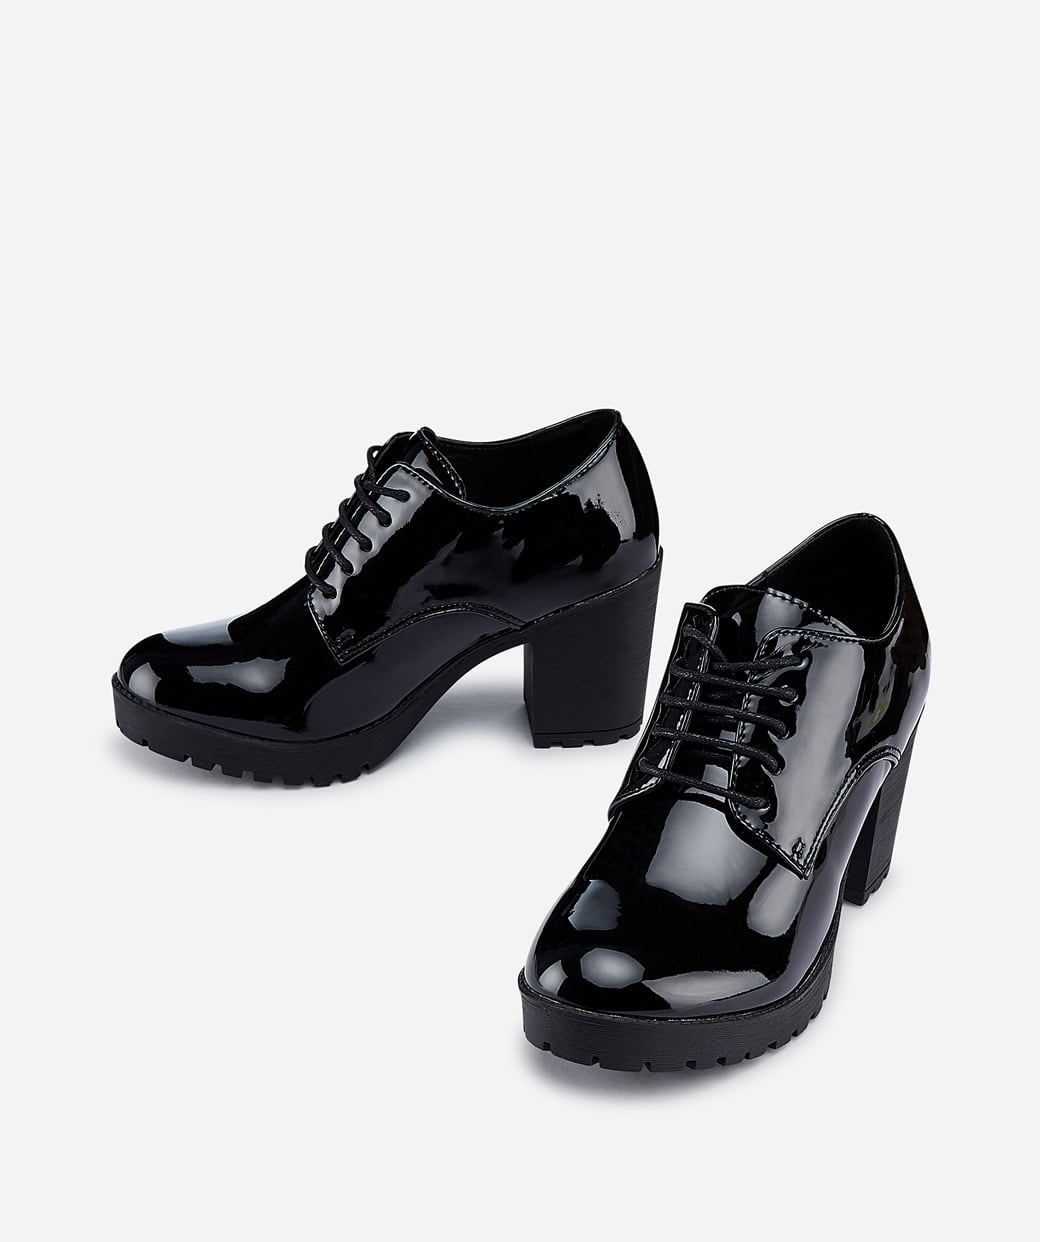 Los zapatos para mujer más cómodos - BLOG MARYPAZ